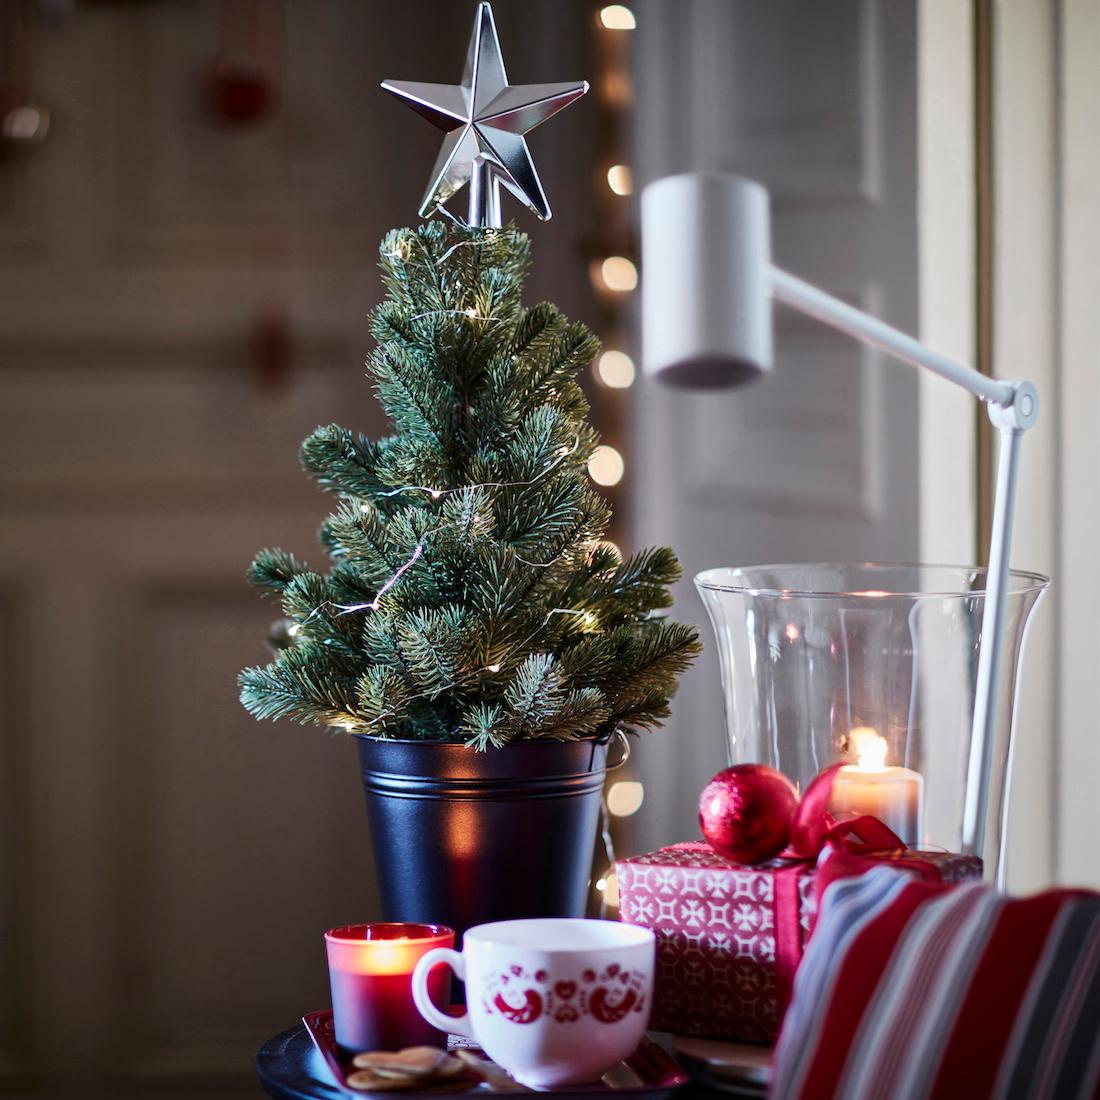 Weihnachtsbaum von IKEA #ikea #weihnachtsdeko ©Inter IKEA Systems B.V. 2016